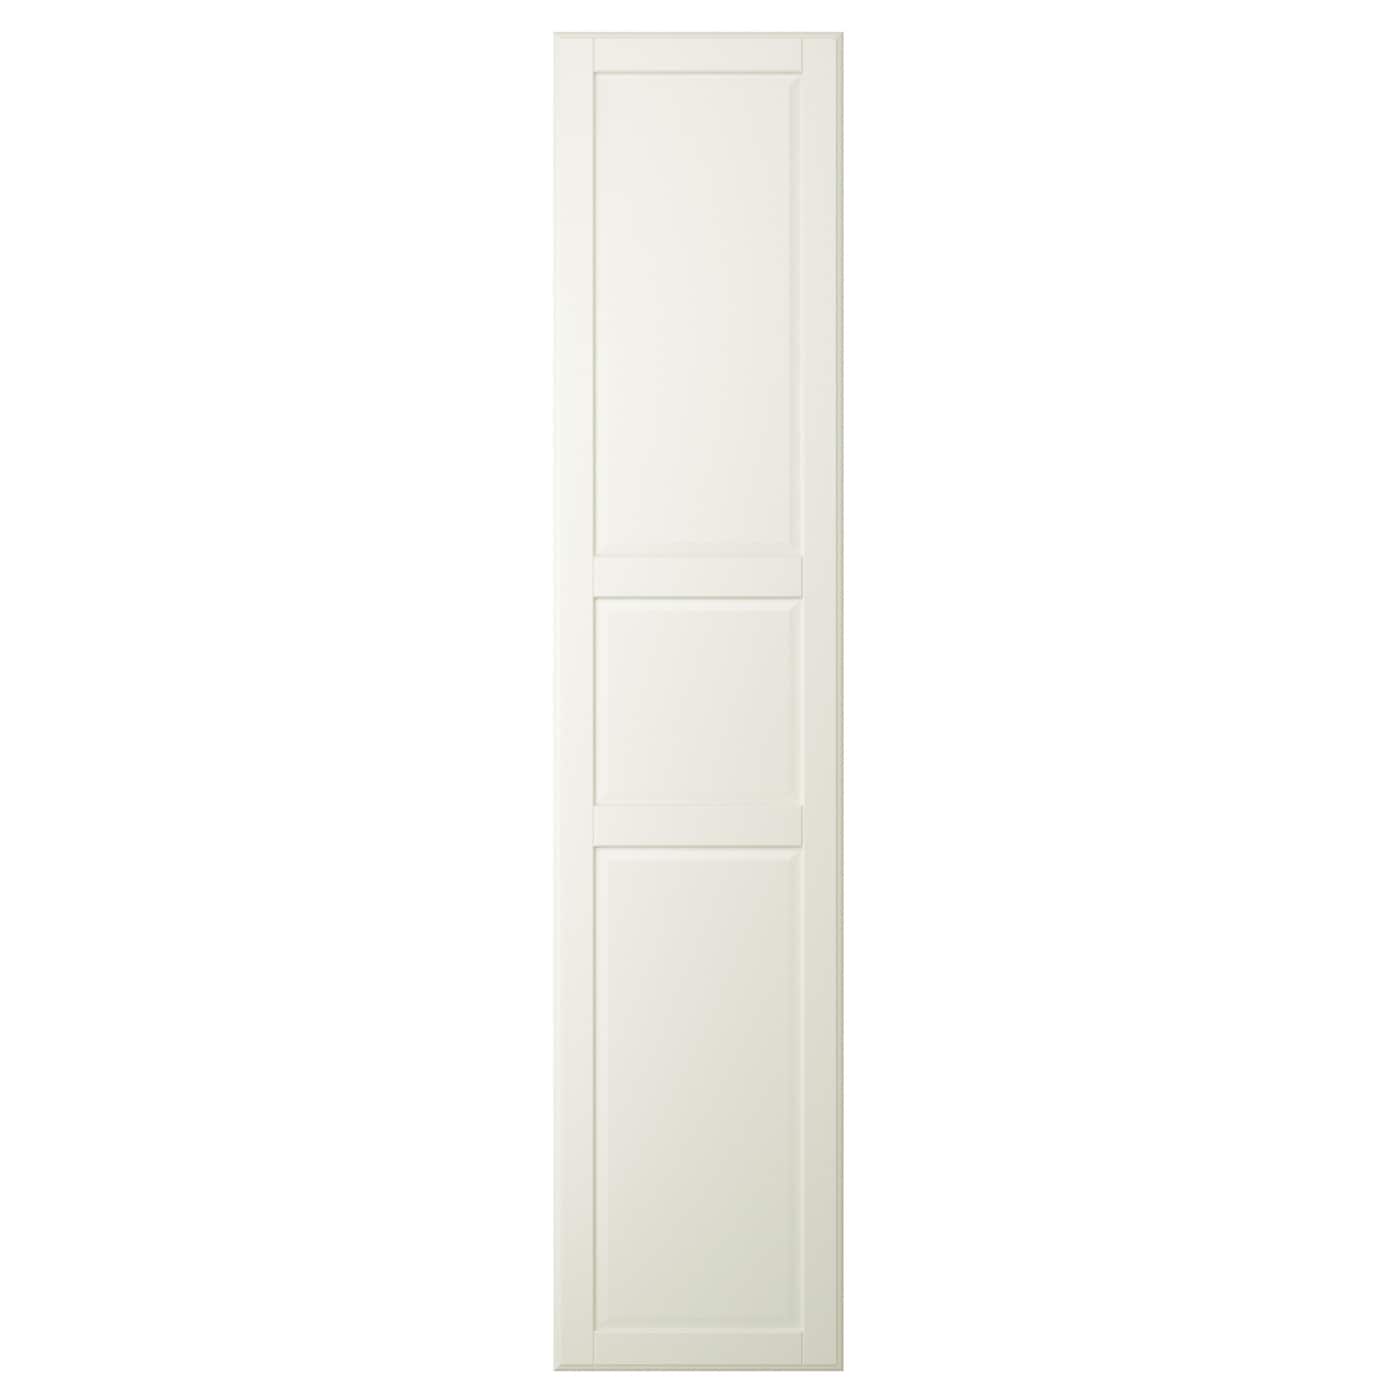 Дверь шкафа - TYSSEDAL IKEA/ ТИССЕДАЛЬ ИКЕА, 50x229 см, белый